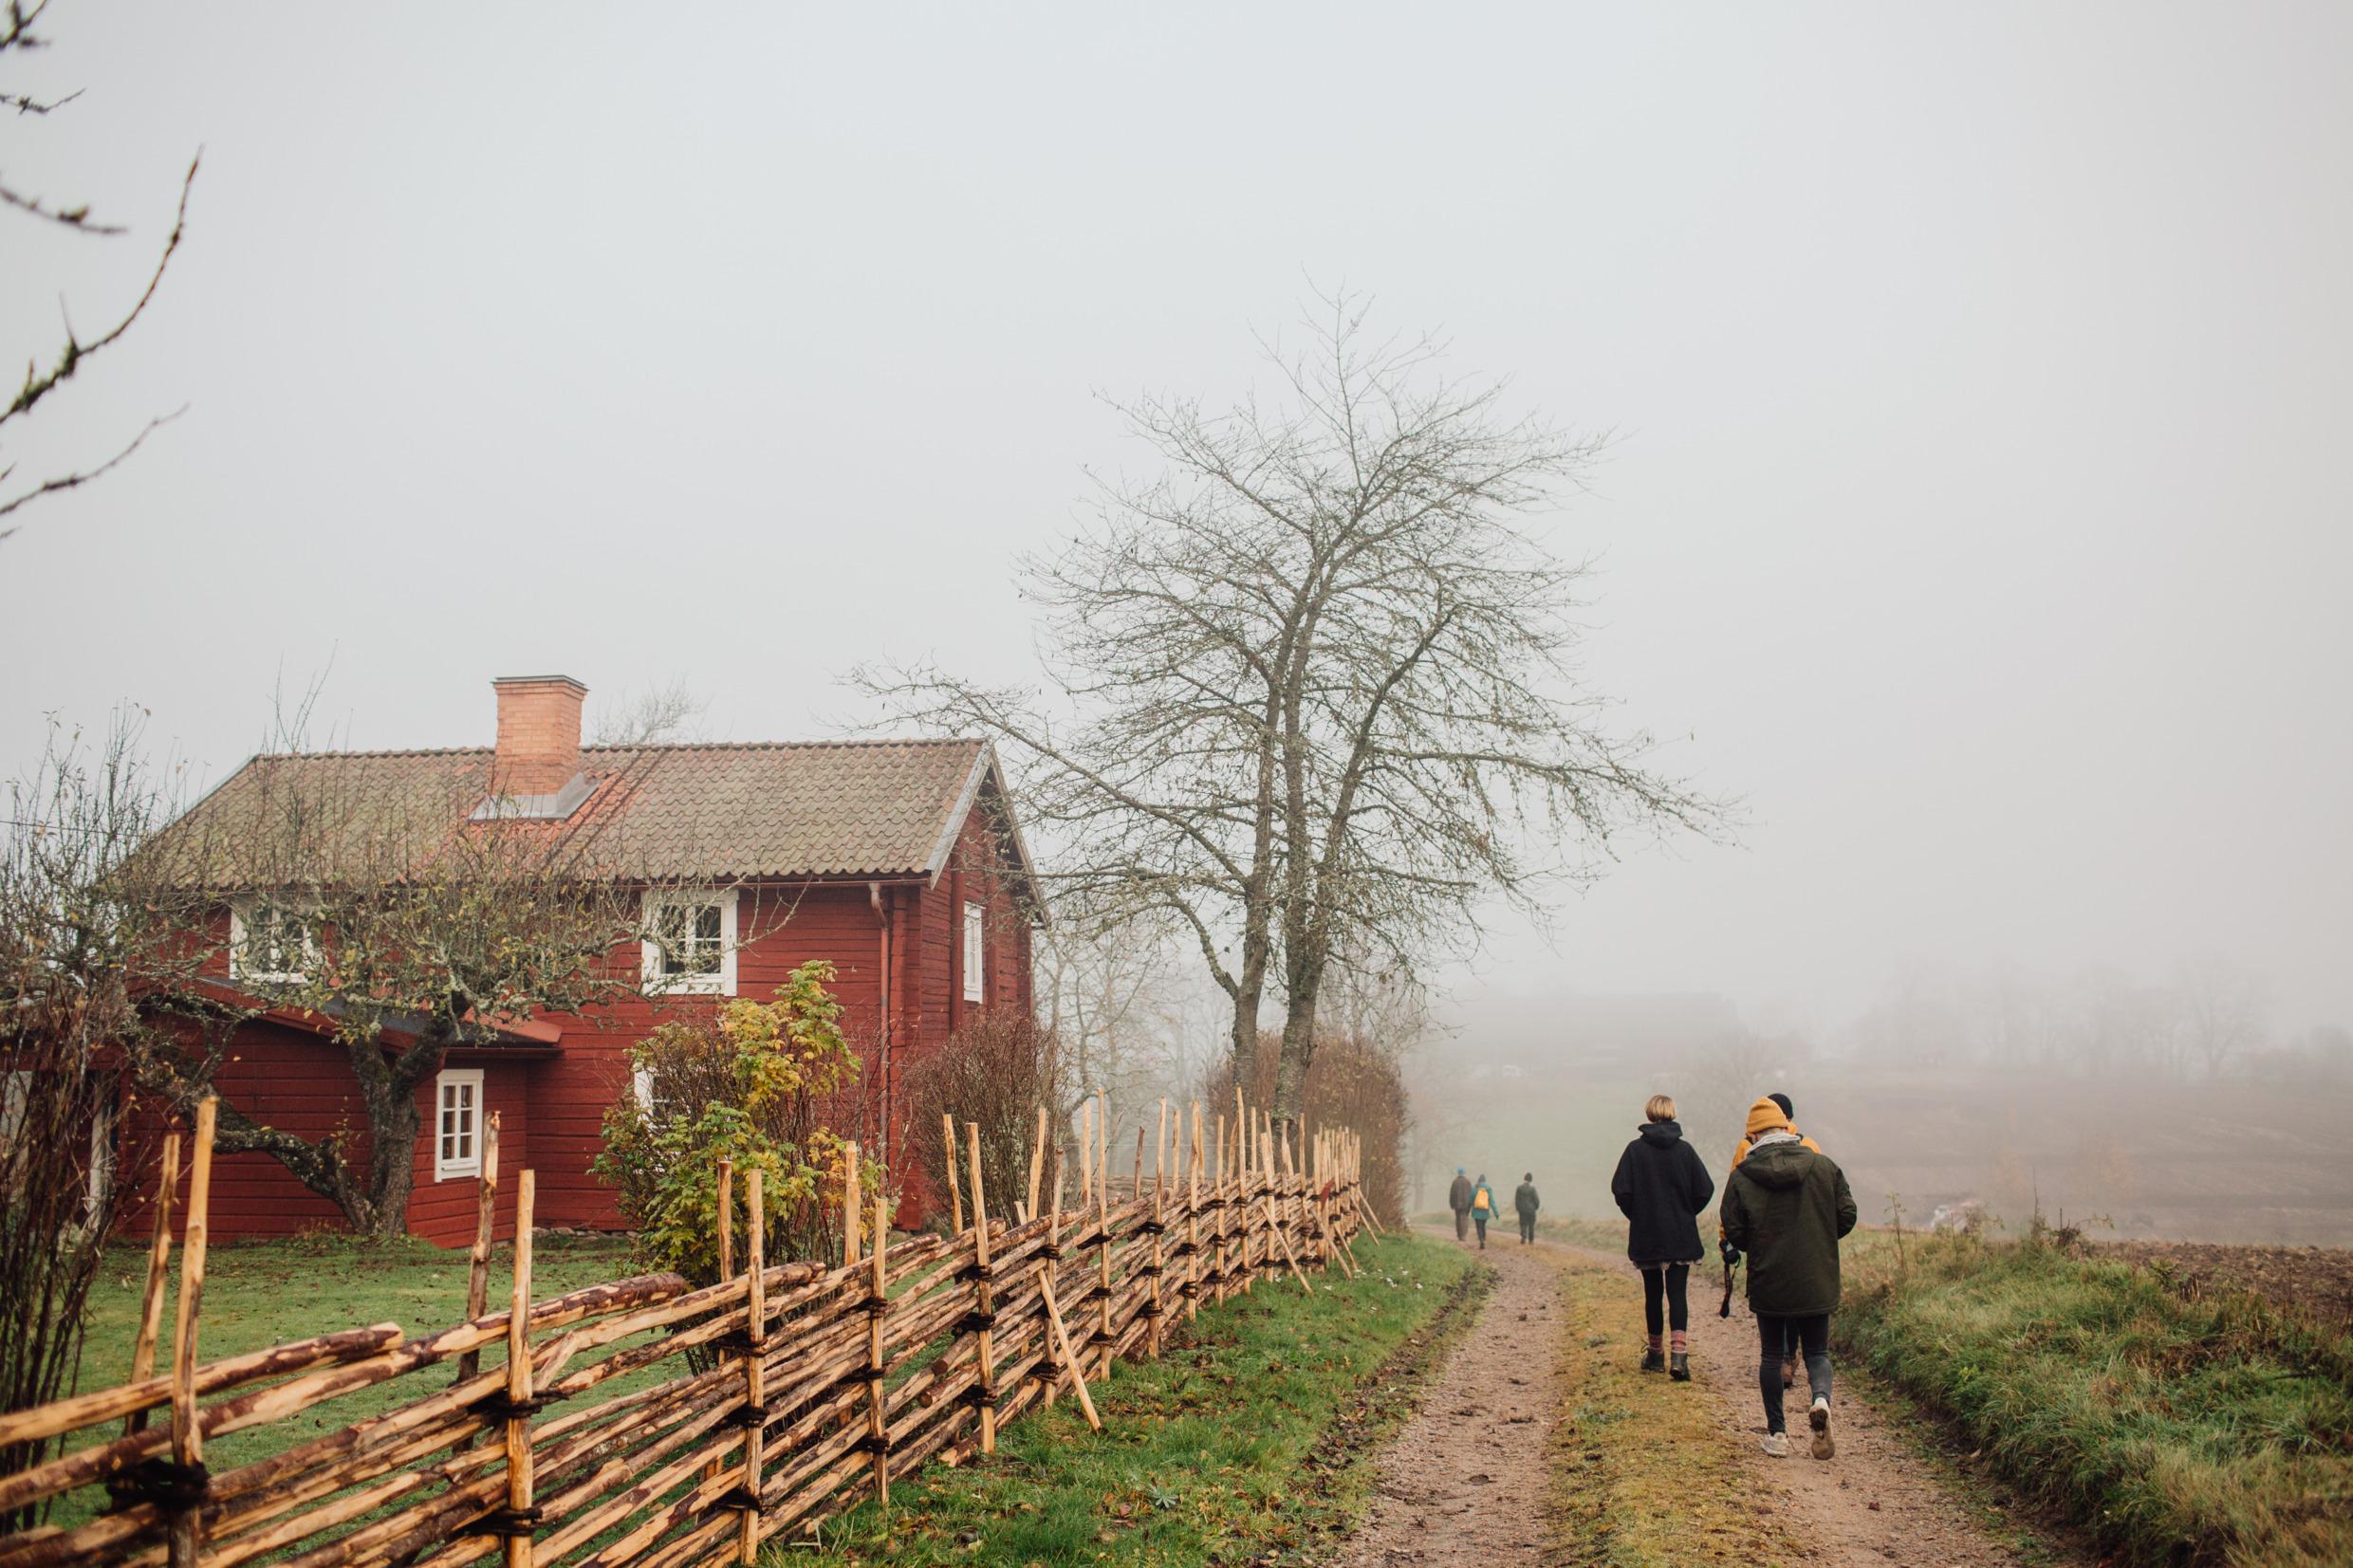 типичный красный деревянный дом в шведской деревне